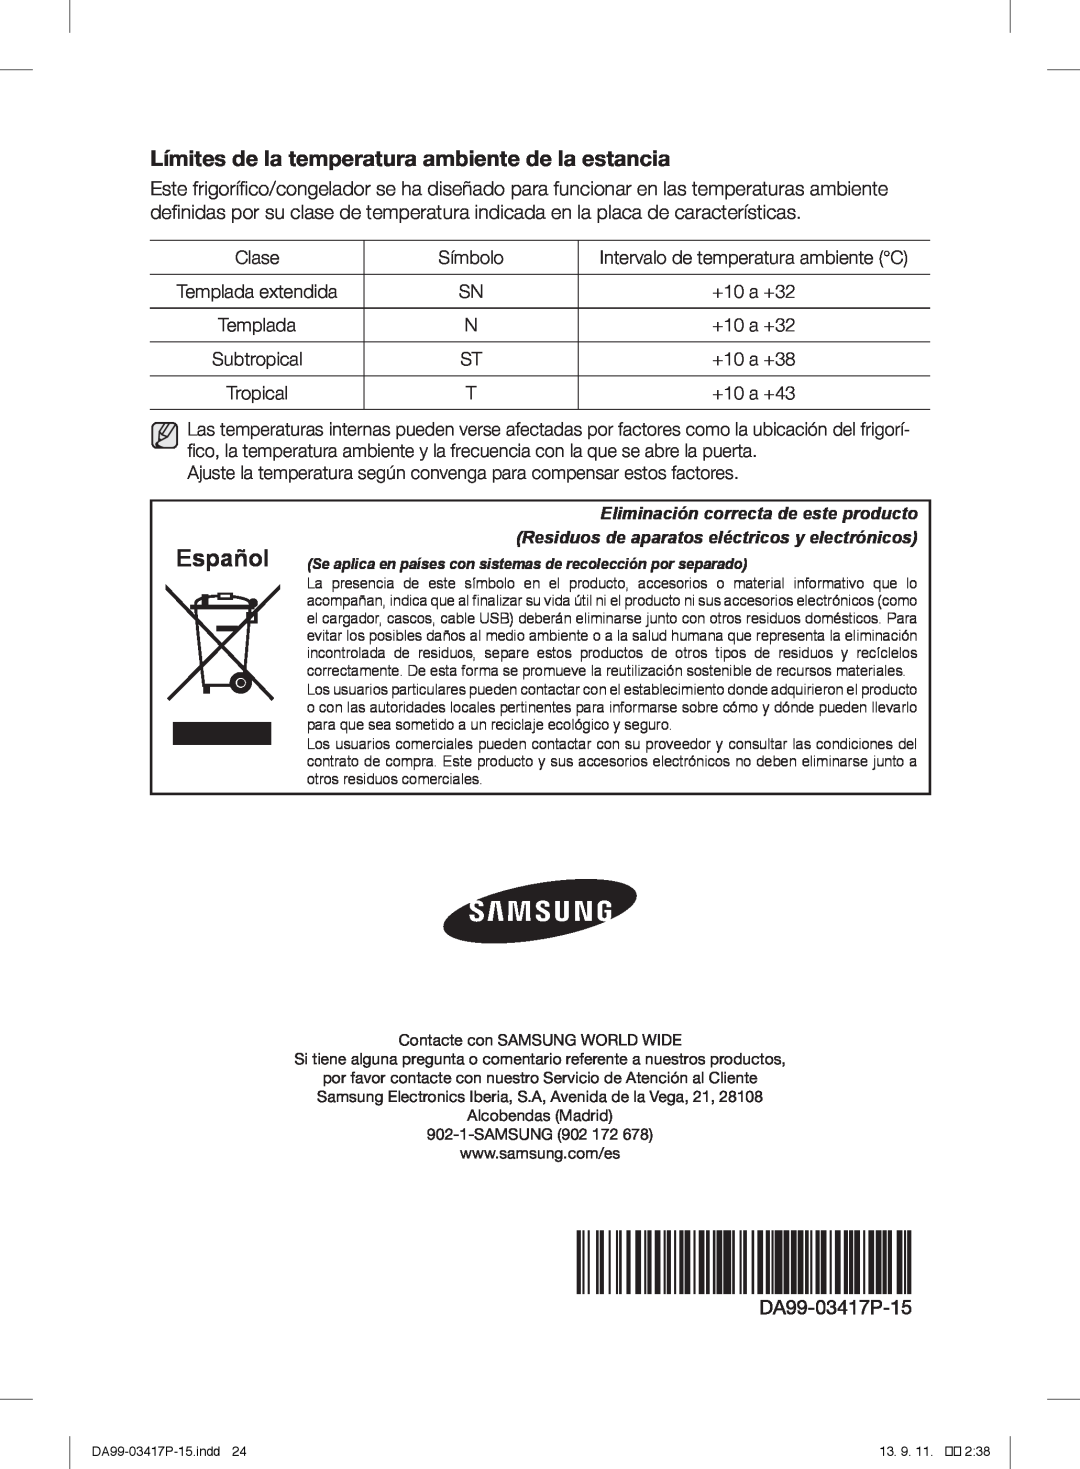 Samsung RL58GREBP1/XEF, RL56GSBIH1/XEF, RL56GREIH1/XEF manual Español, Límites de la temperatura ambiente de la estancia 